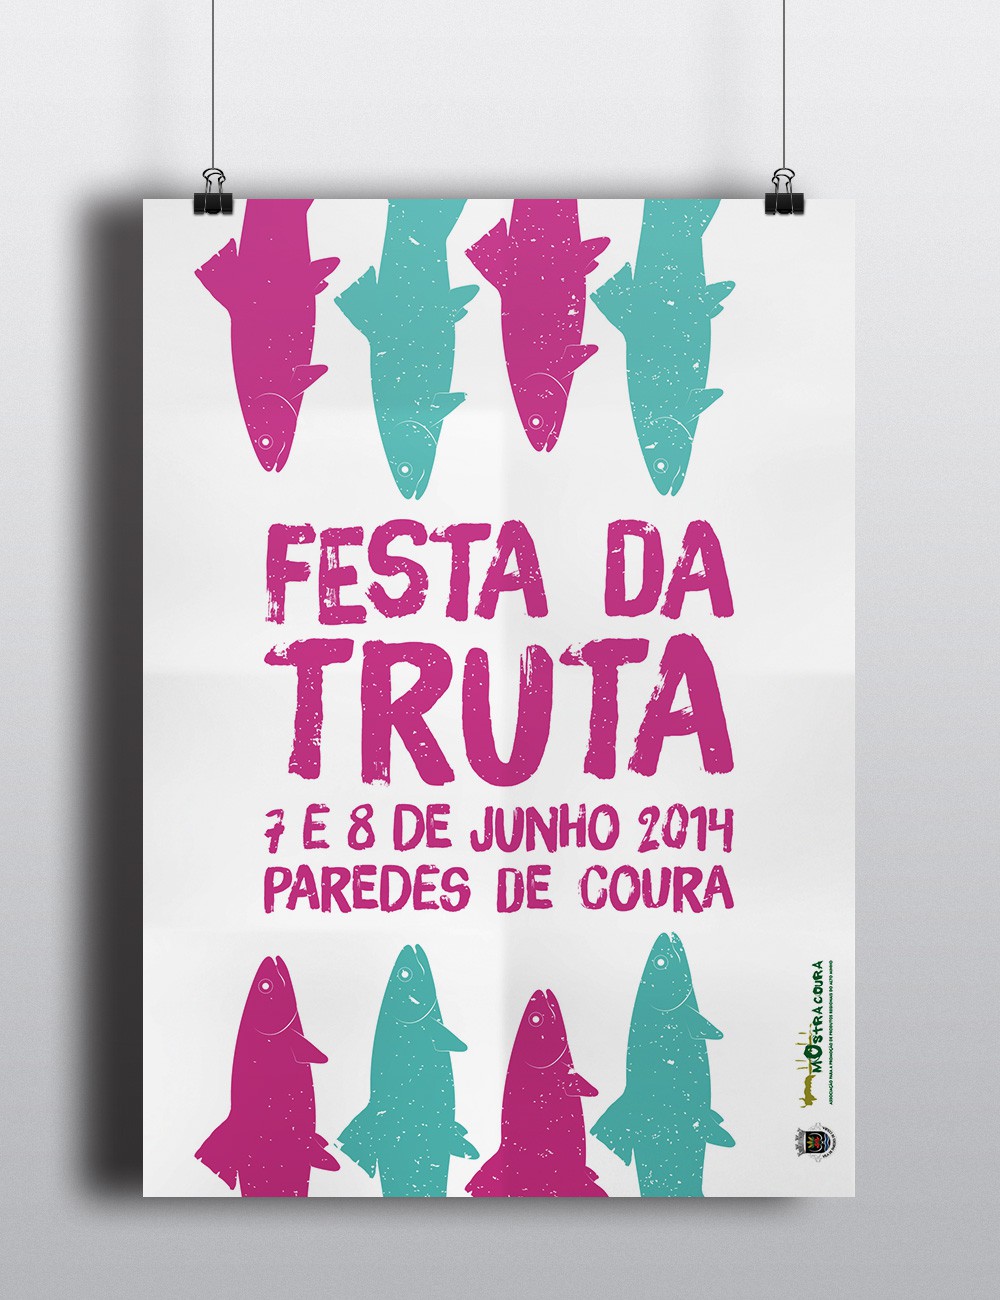 Event poster for Câmara Municial de Paredes de Coura